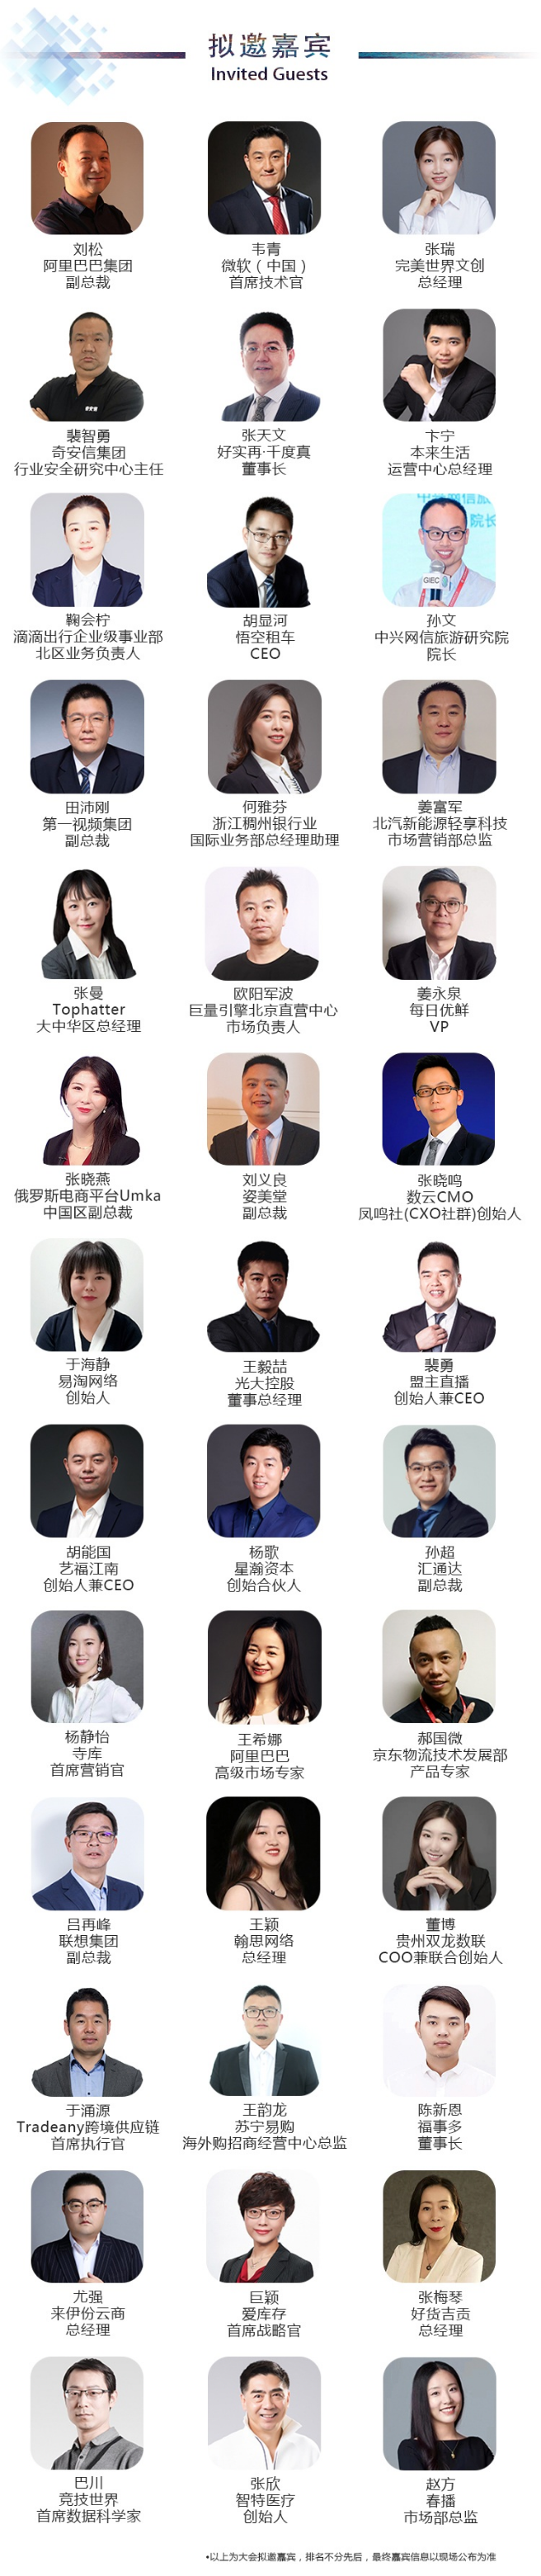 2019中国互联网经济年会